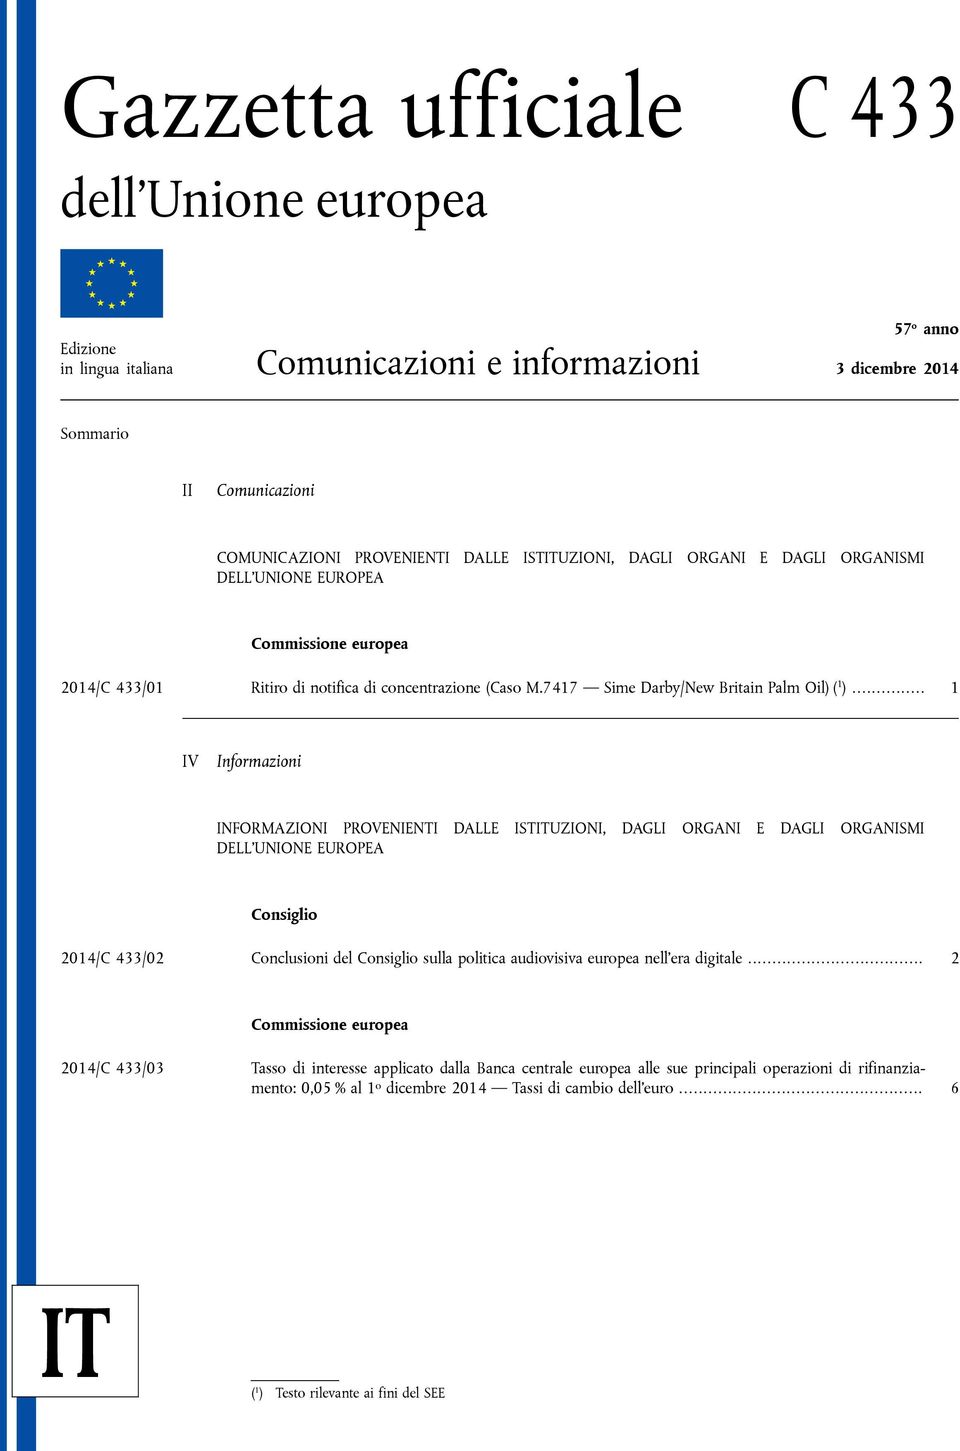 .. 1 IV Informazioni INFORMAZIONI PROVENIENTI DALLE ISTITUZIONI, DAGLI ORGANI E DAGLI ORGANISMI DELL'UNIONE EUROPEA Consiglio 2014/C 433/02 Conclusioni del Consiglio sulla politica audiovisiva